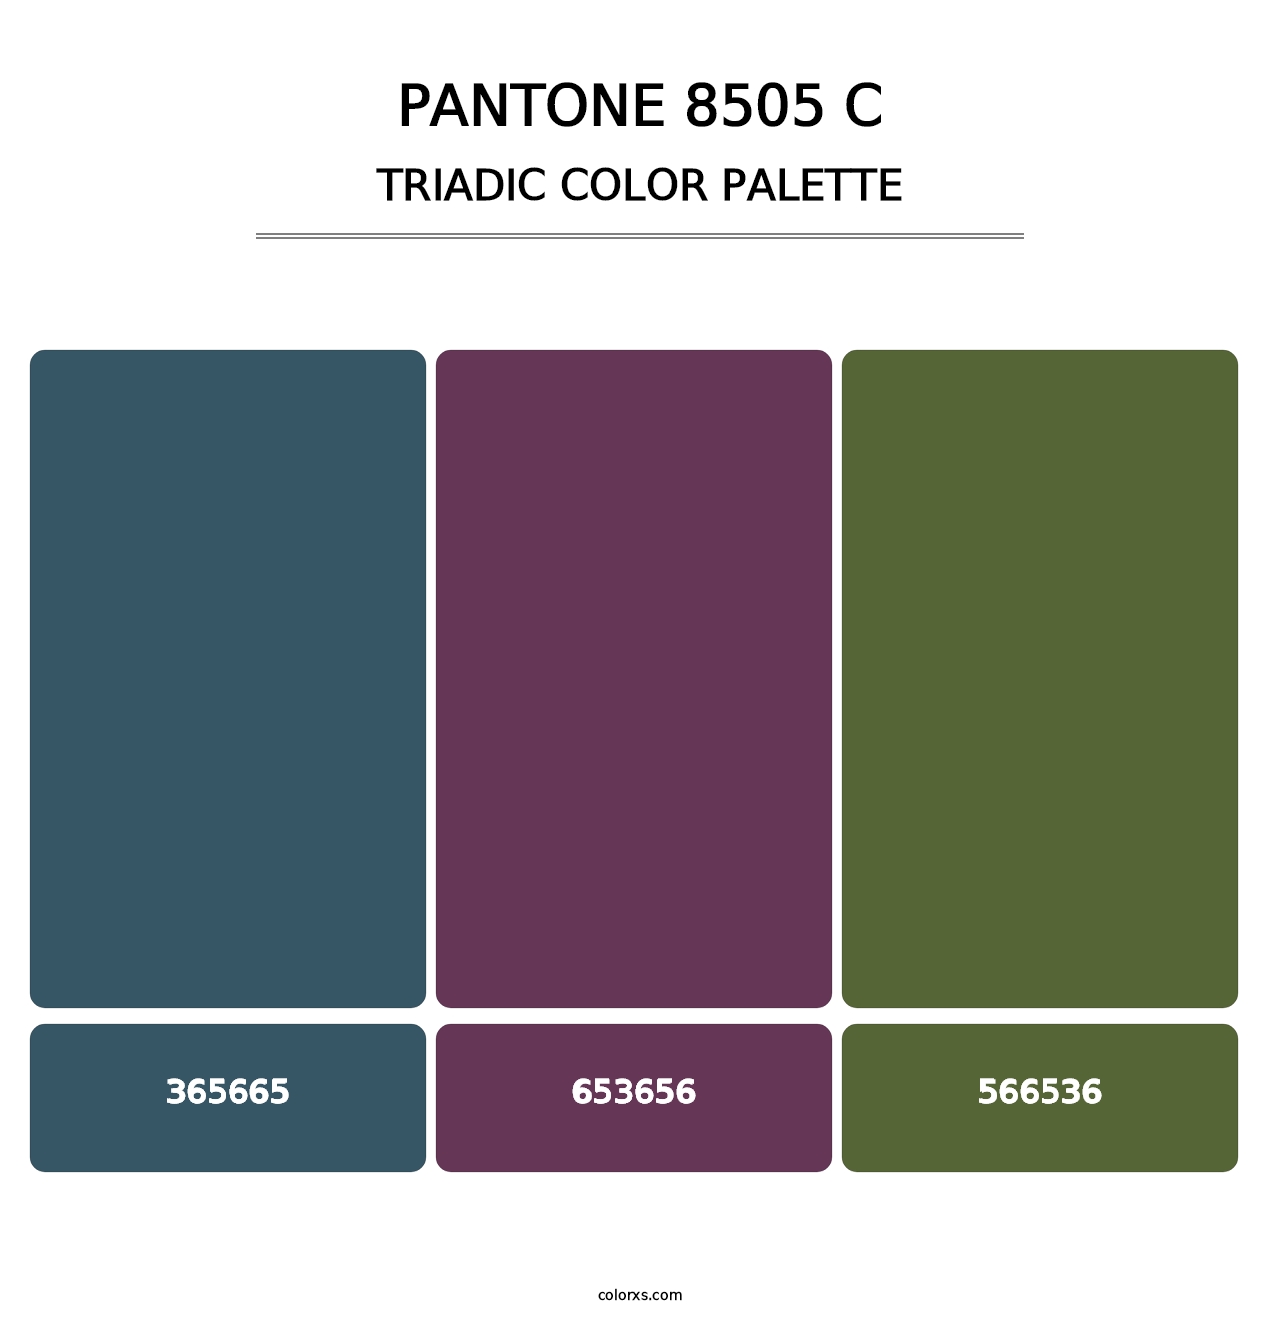 PANTONE 8505 C - Triadic Color Palette